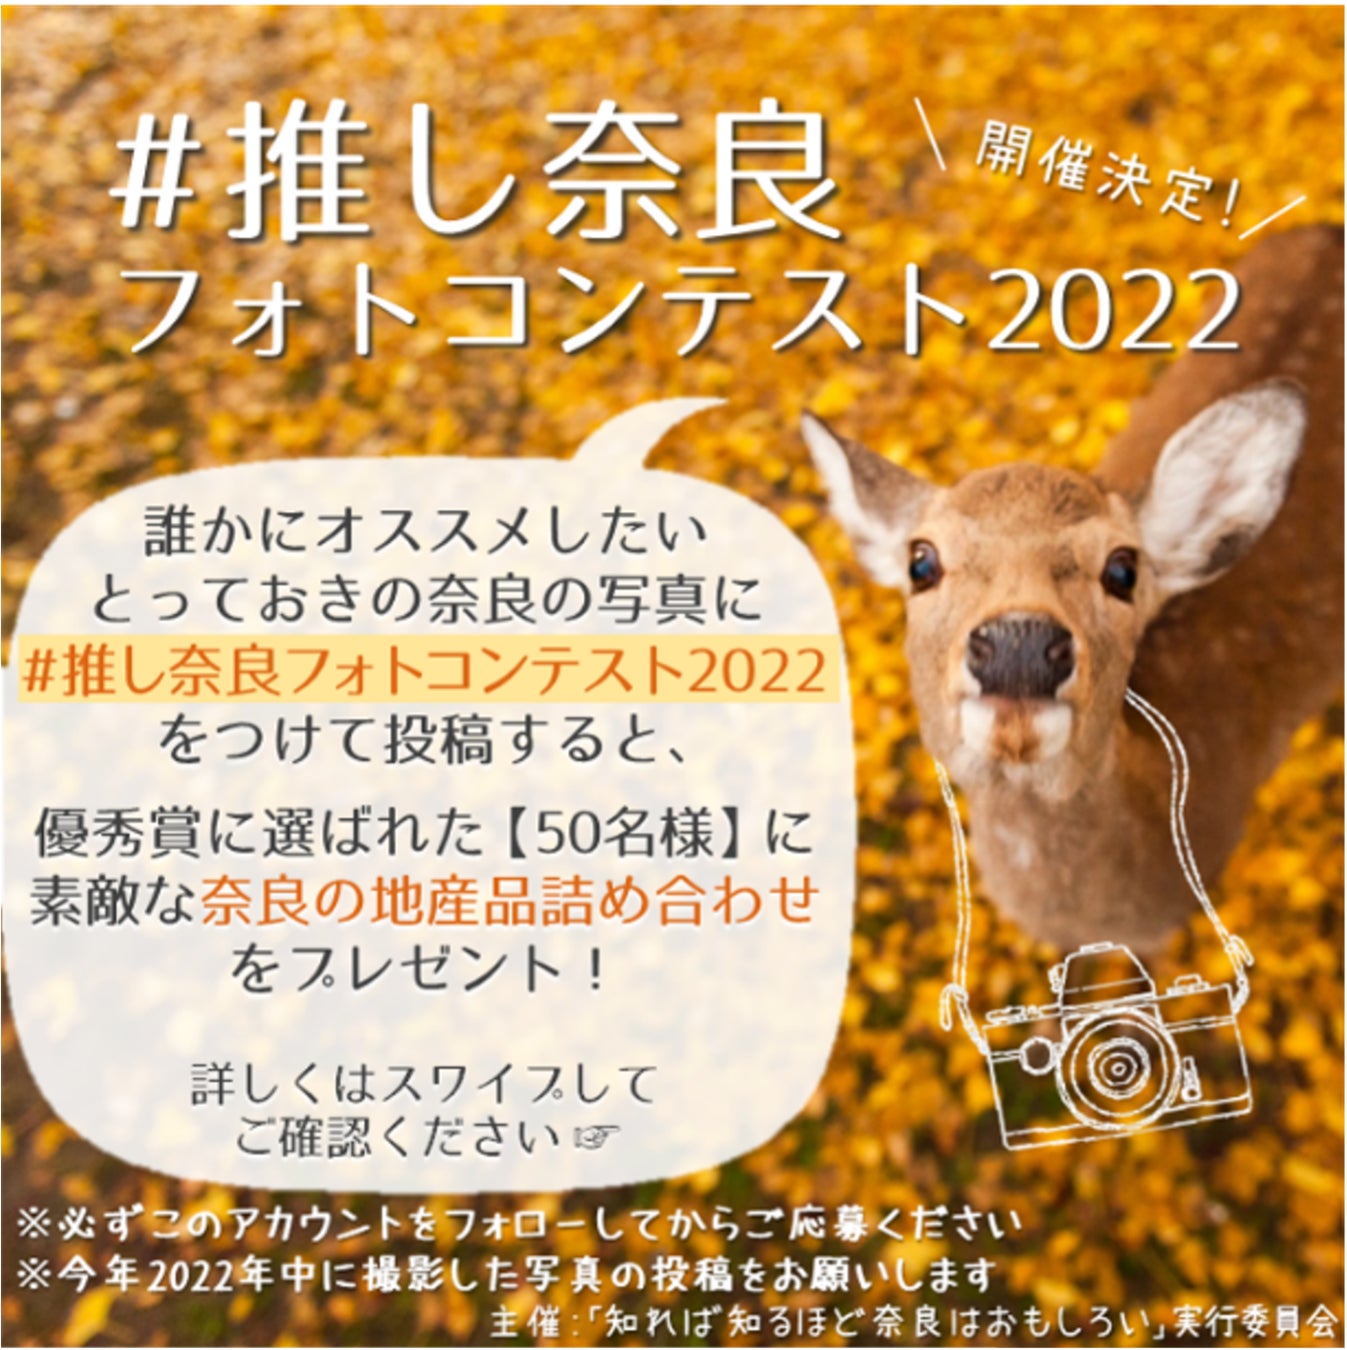 【「知れば知るほど奈良はおもしろい」キャンペーン】「＃推し奈良フォトコンテスト2022」の開催